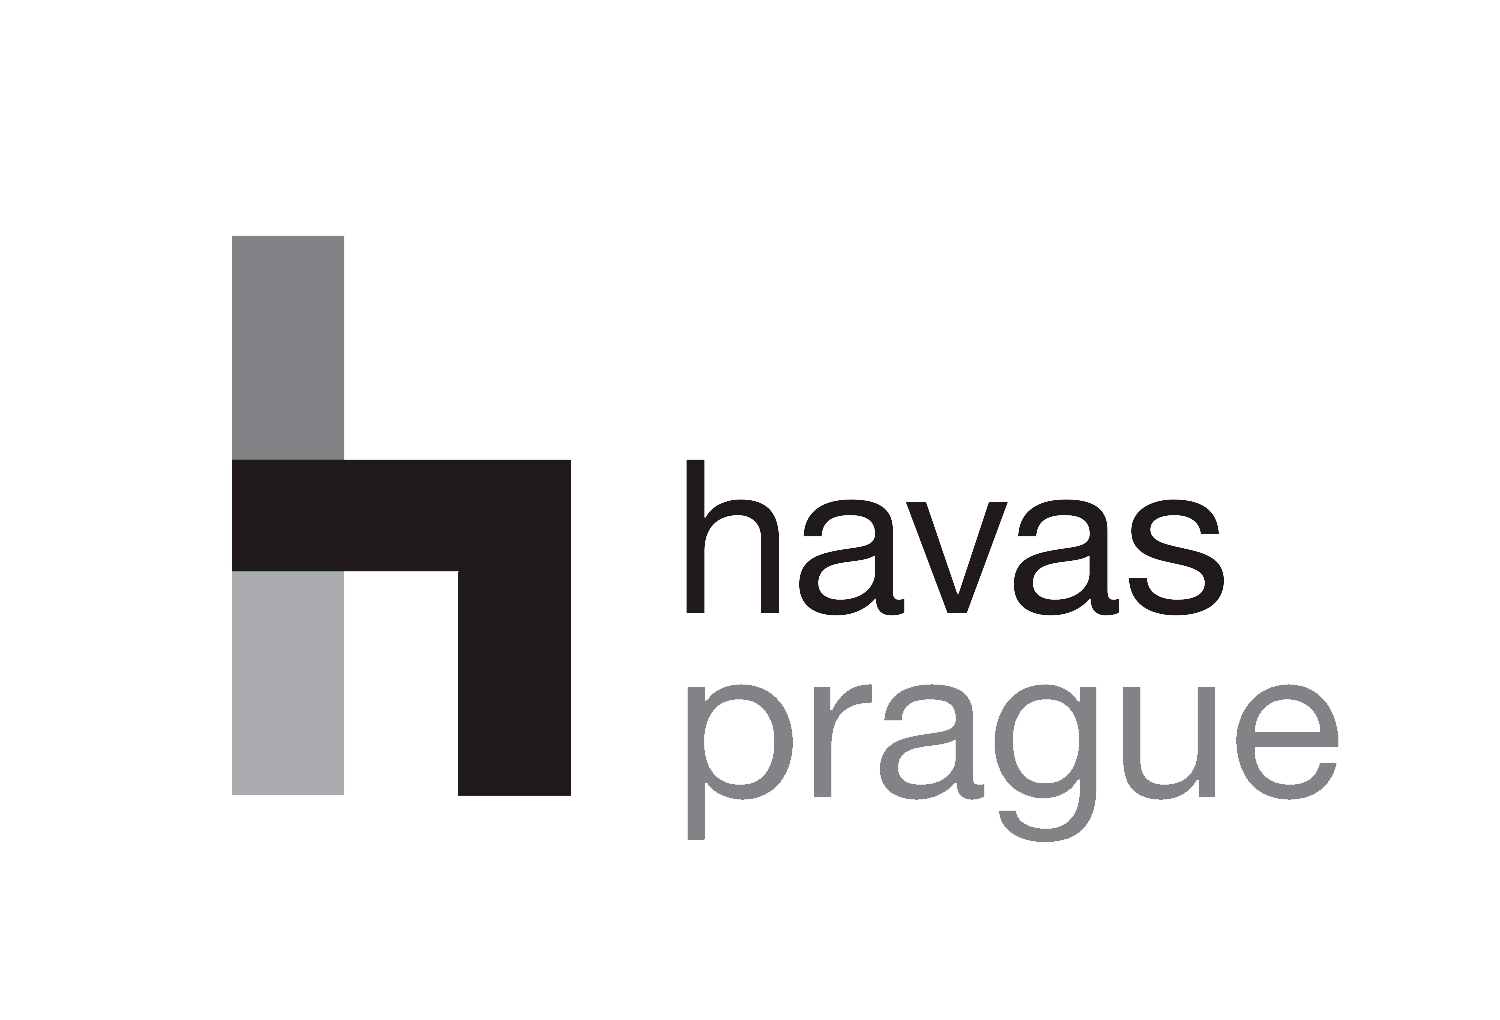 Havas-logo-prague